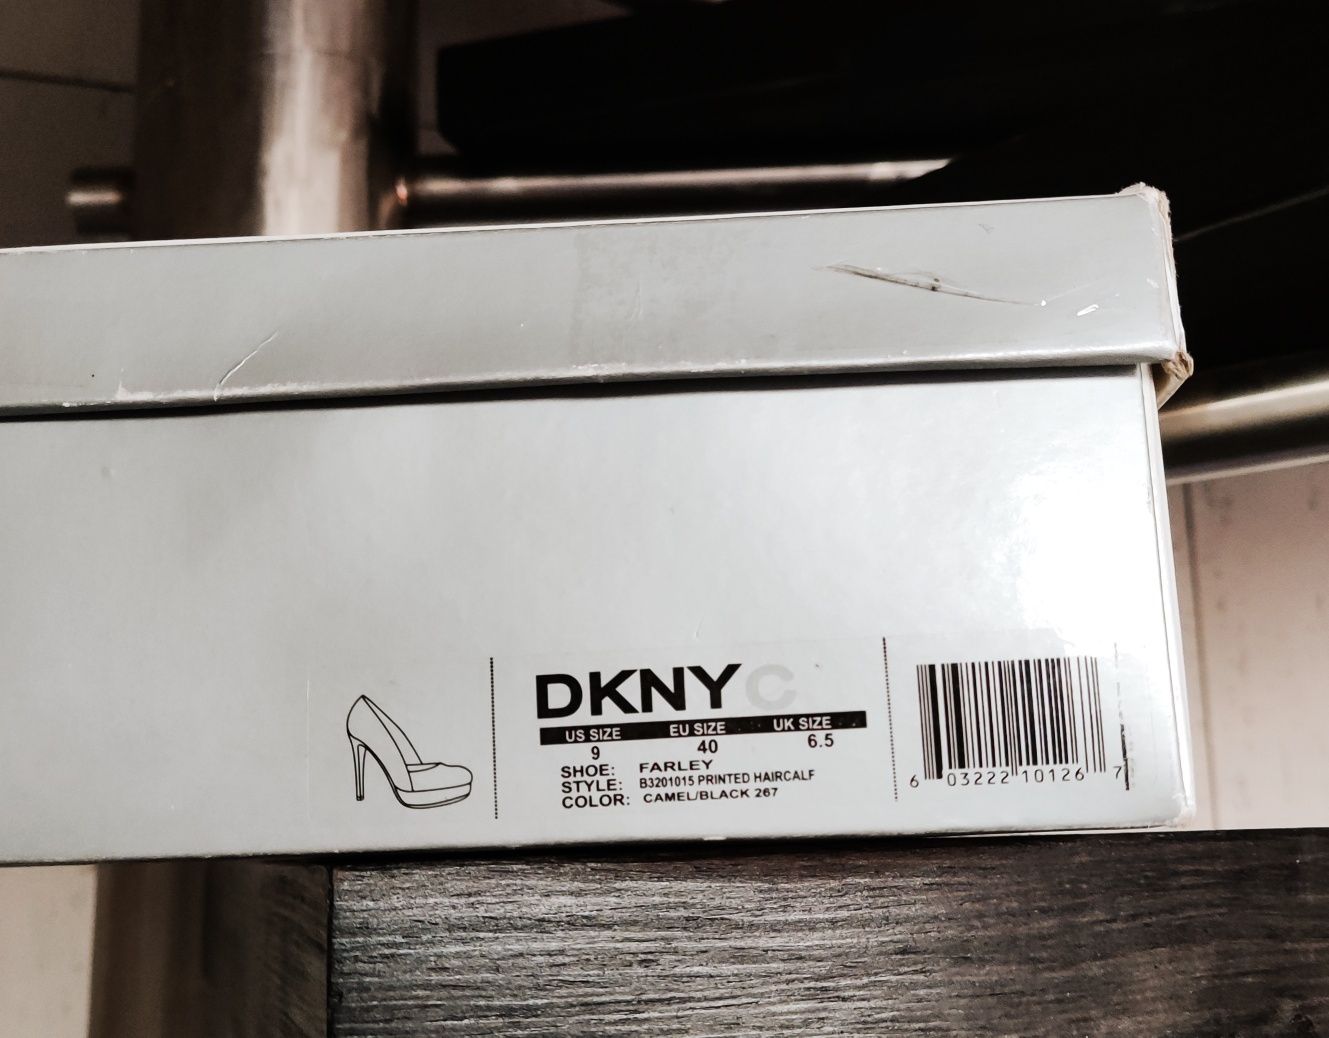 Buty szpilki DKNY Donna Karan roz EU 40 UK 6.5 platformy lakierki